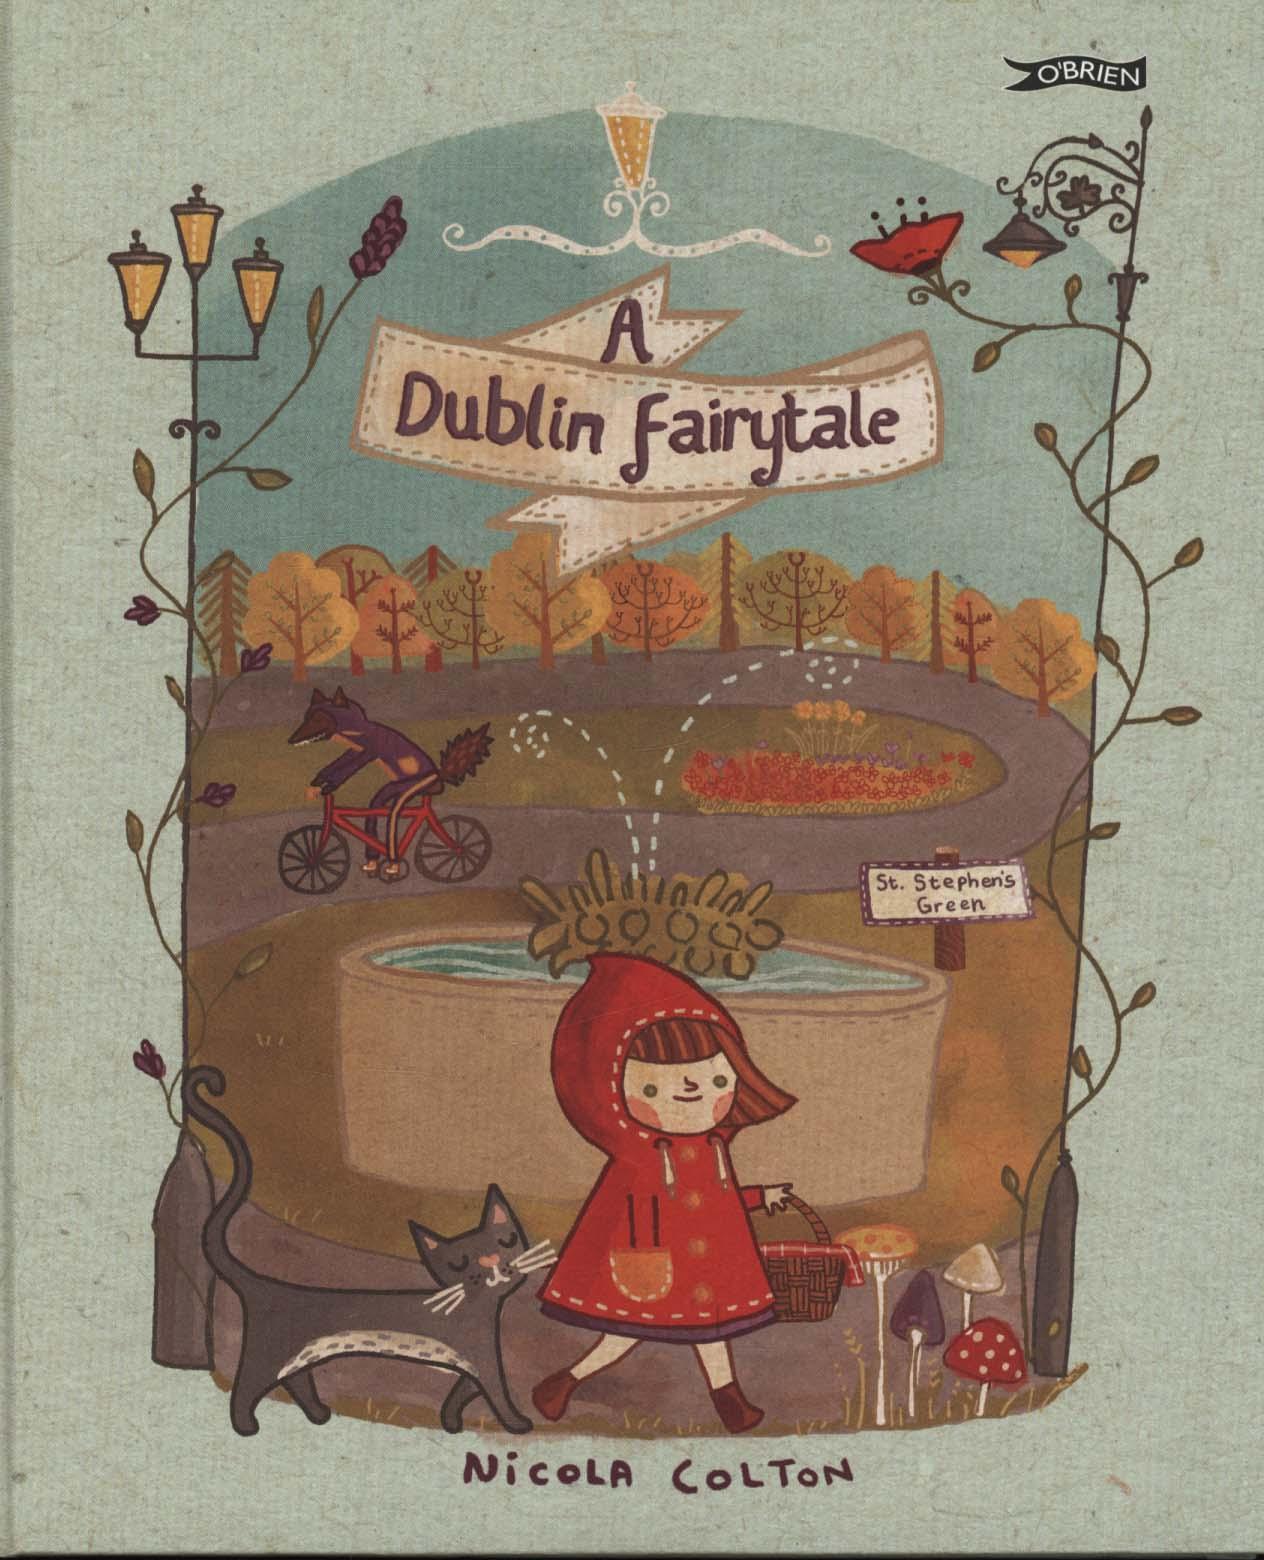 Dublin Fairytale - Nicola Colton